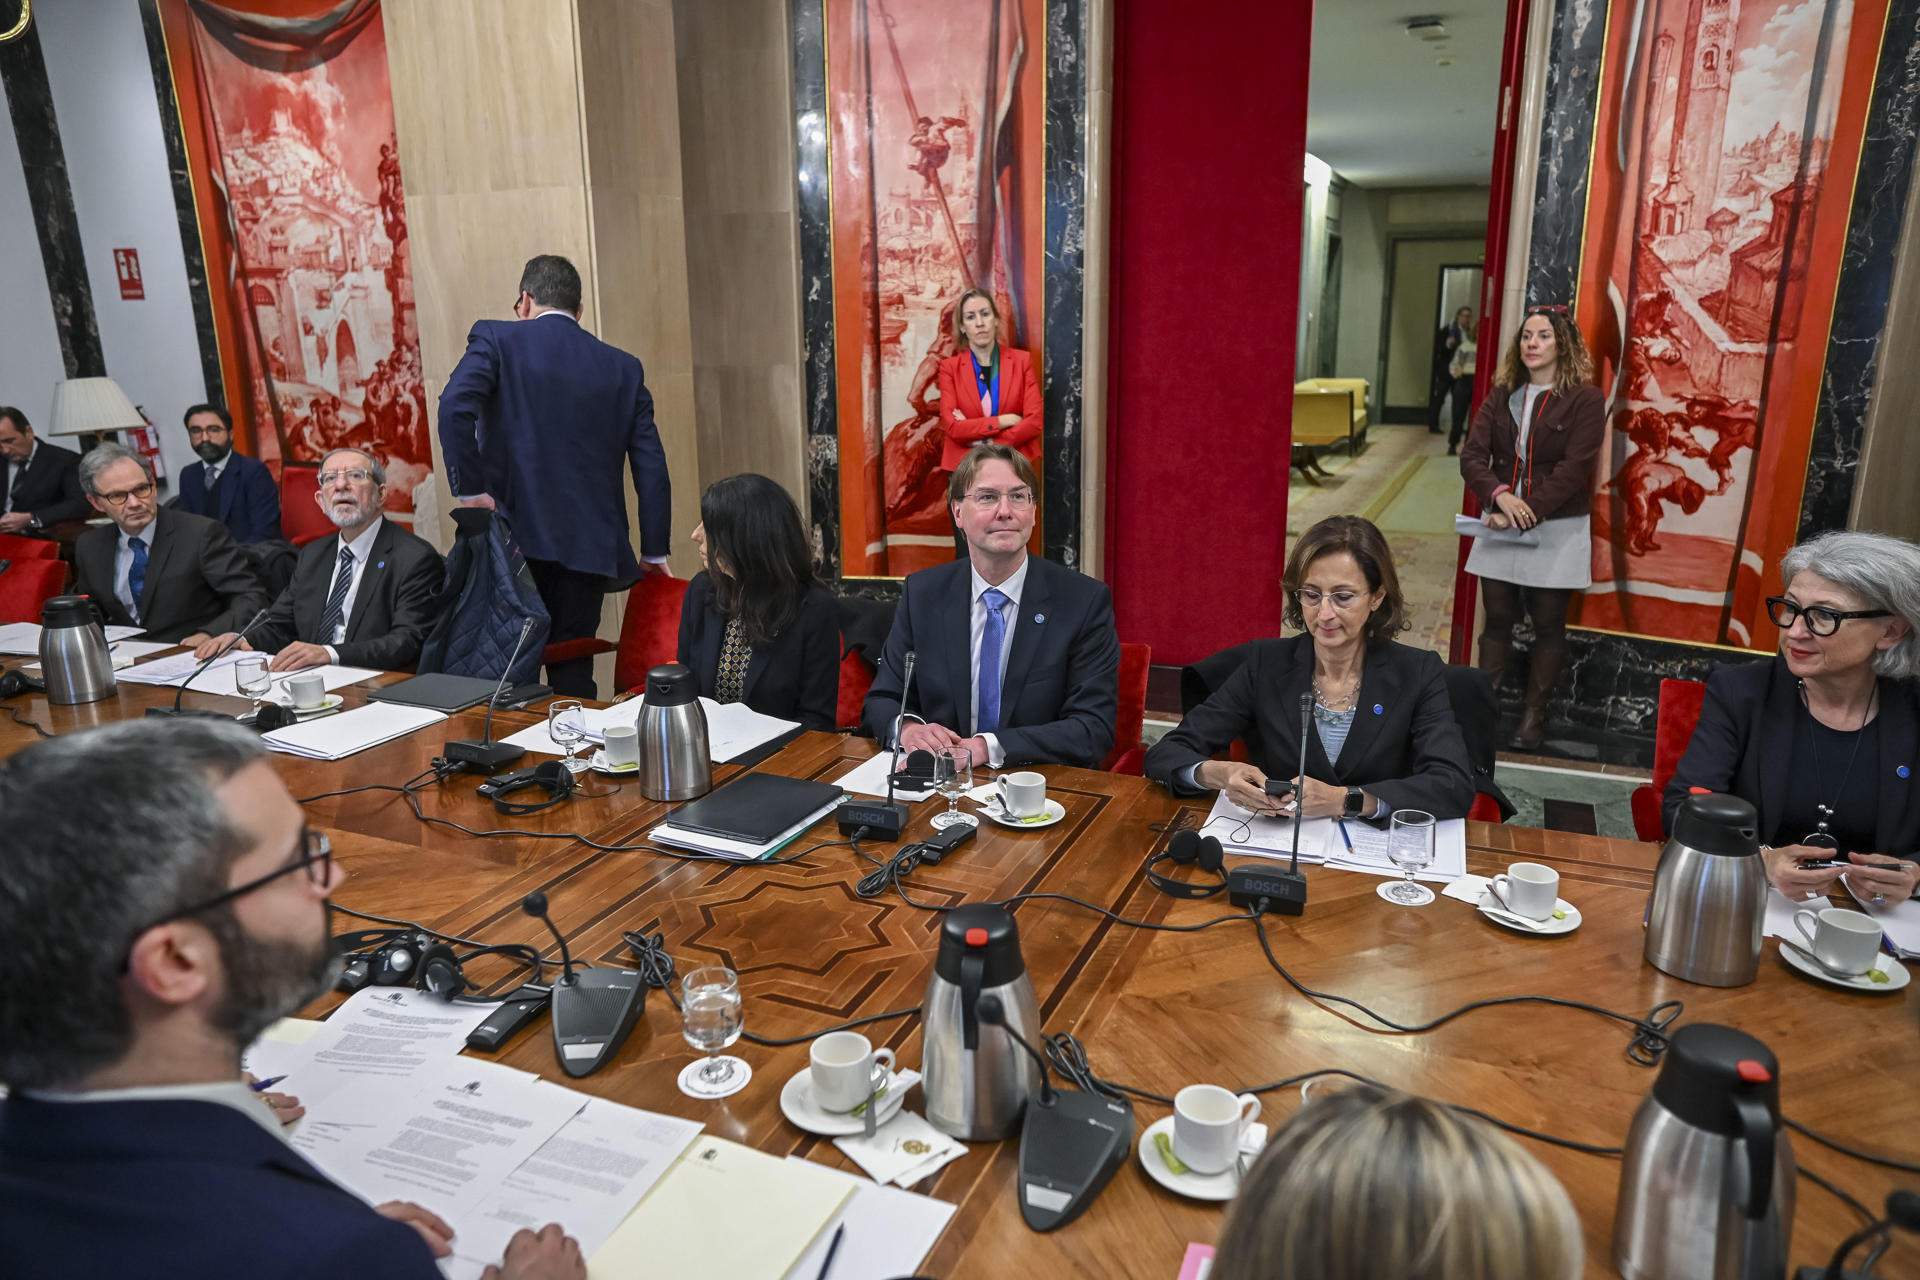 La Comissió de Venècia situa els límits de l'amnistia en les violacions greus dels drets humans